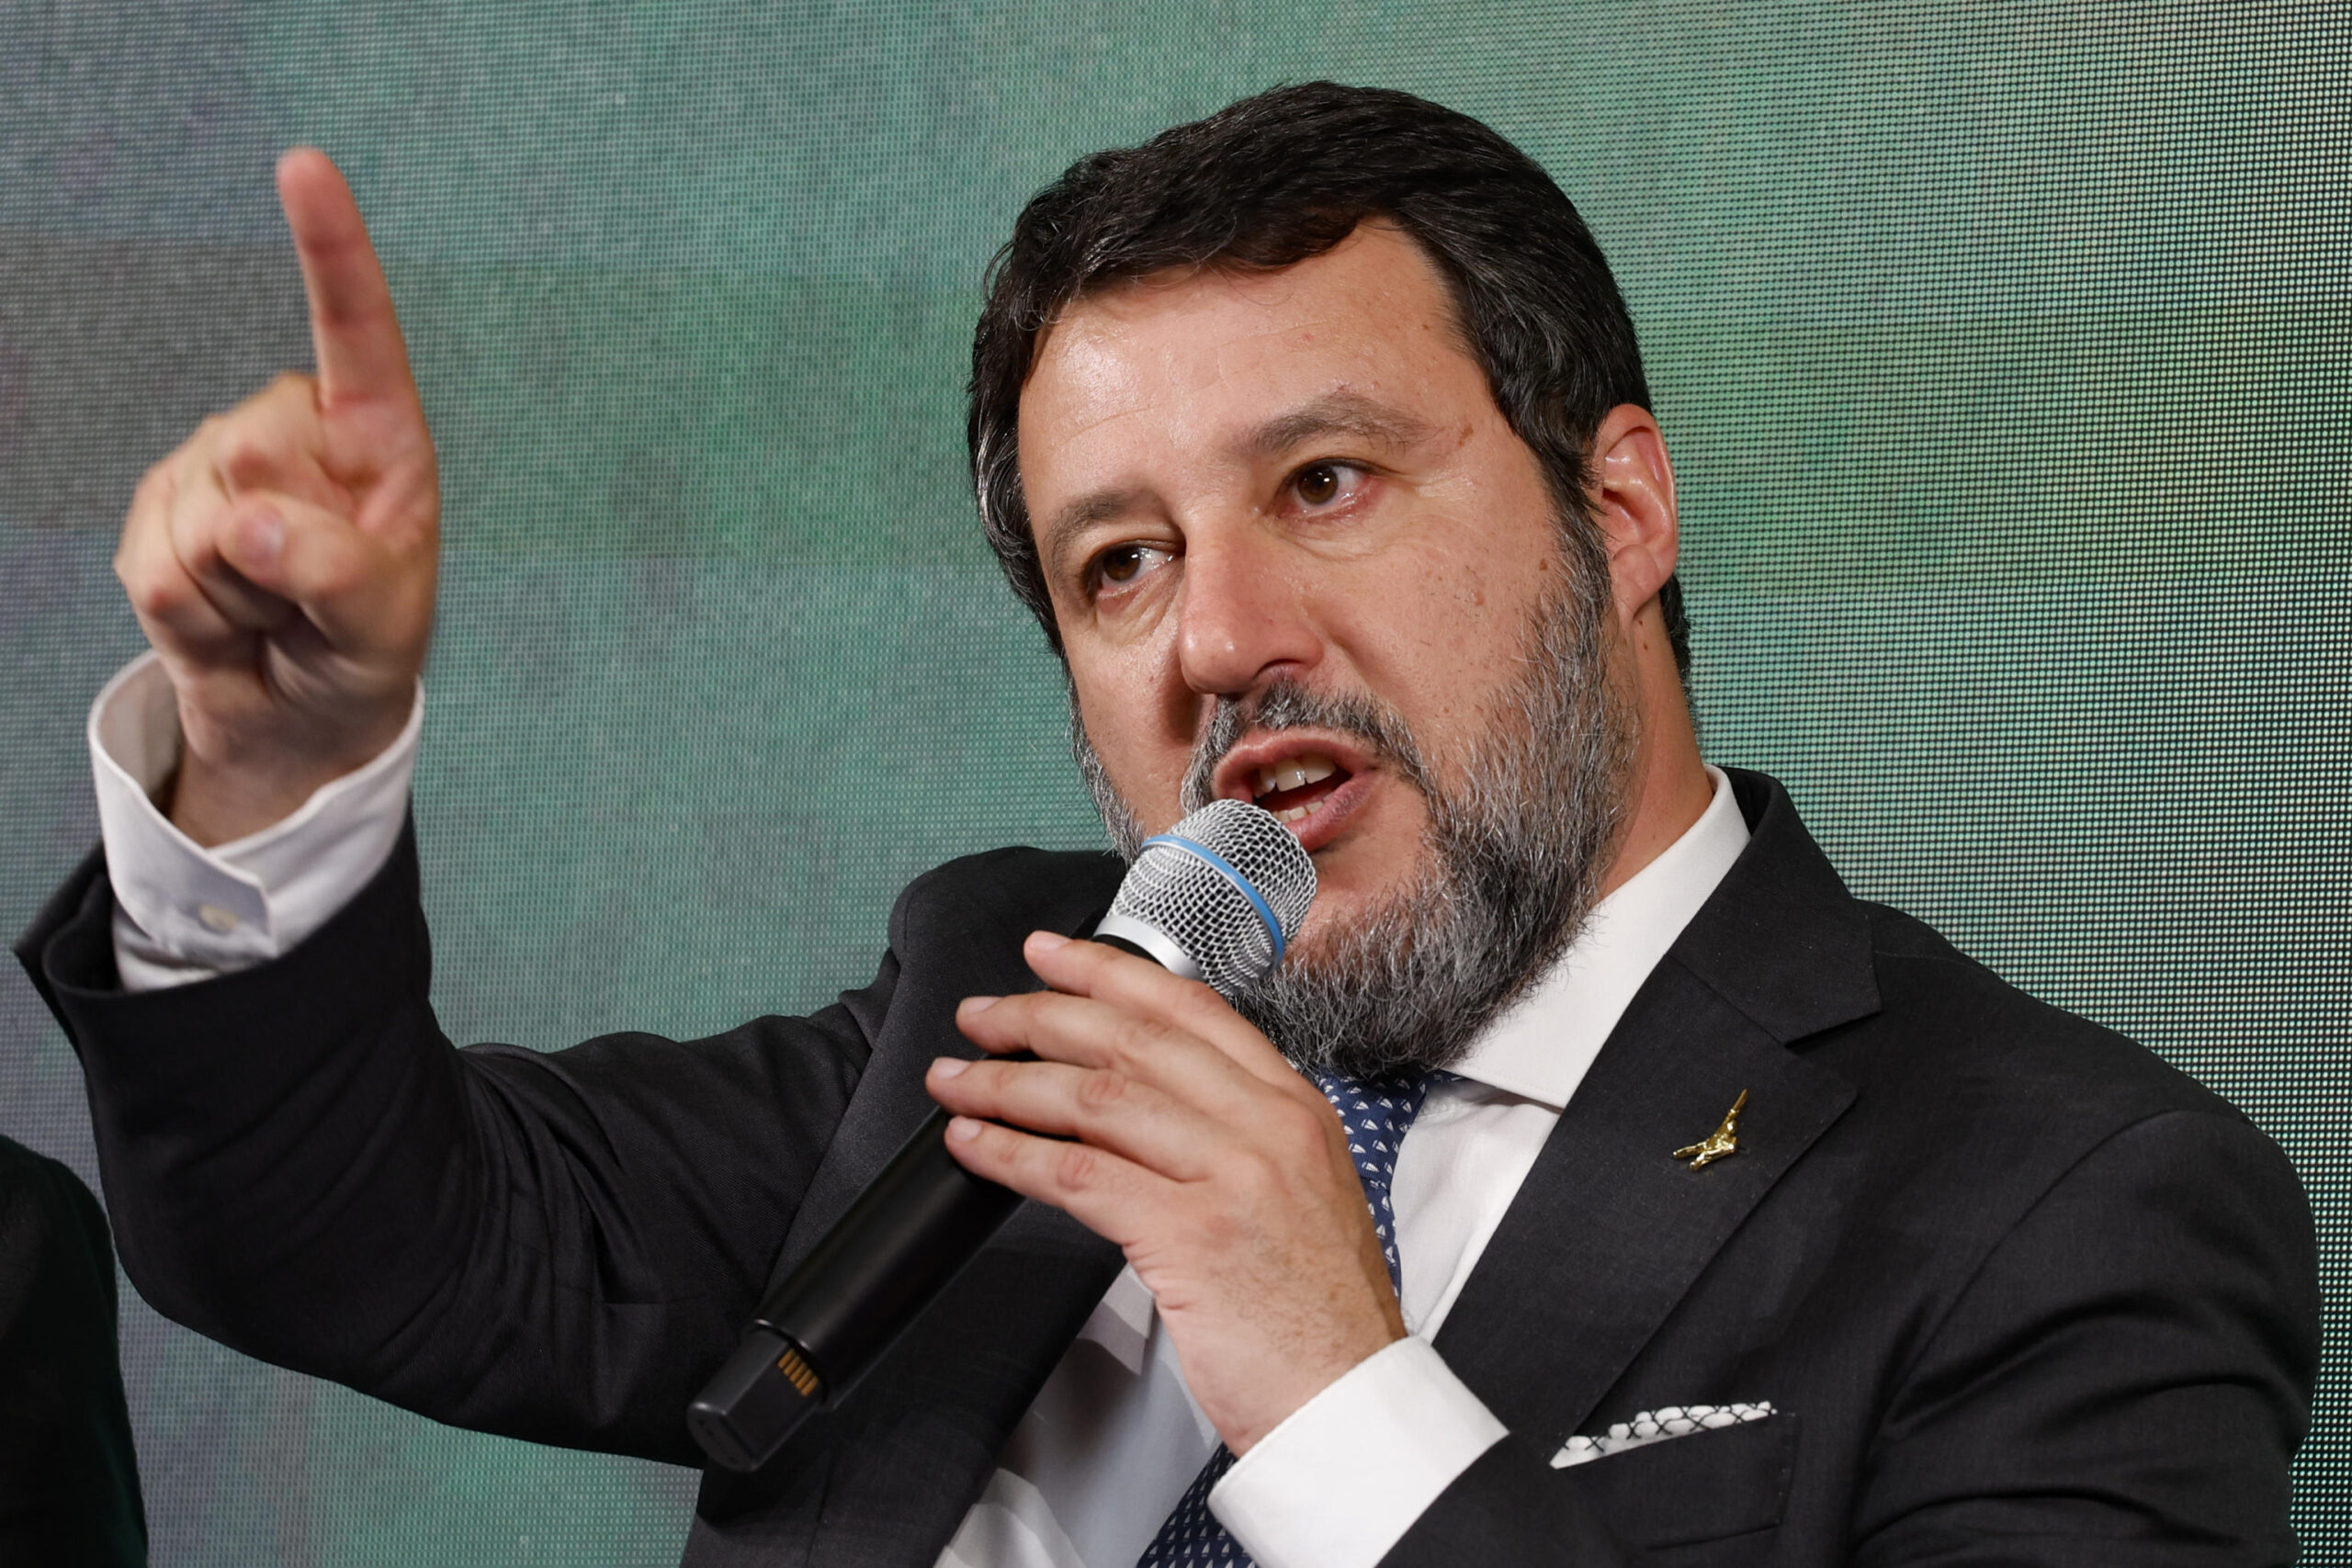 Manovra, la Uil conferma: “sciopero generale il 17 novembre”. Salvini: “i sindacati si fermino o entro stasera precetto”